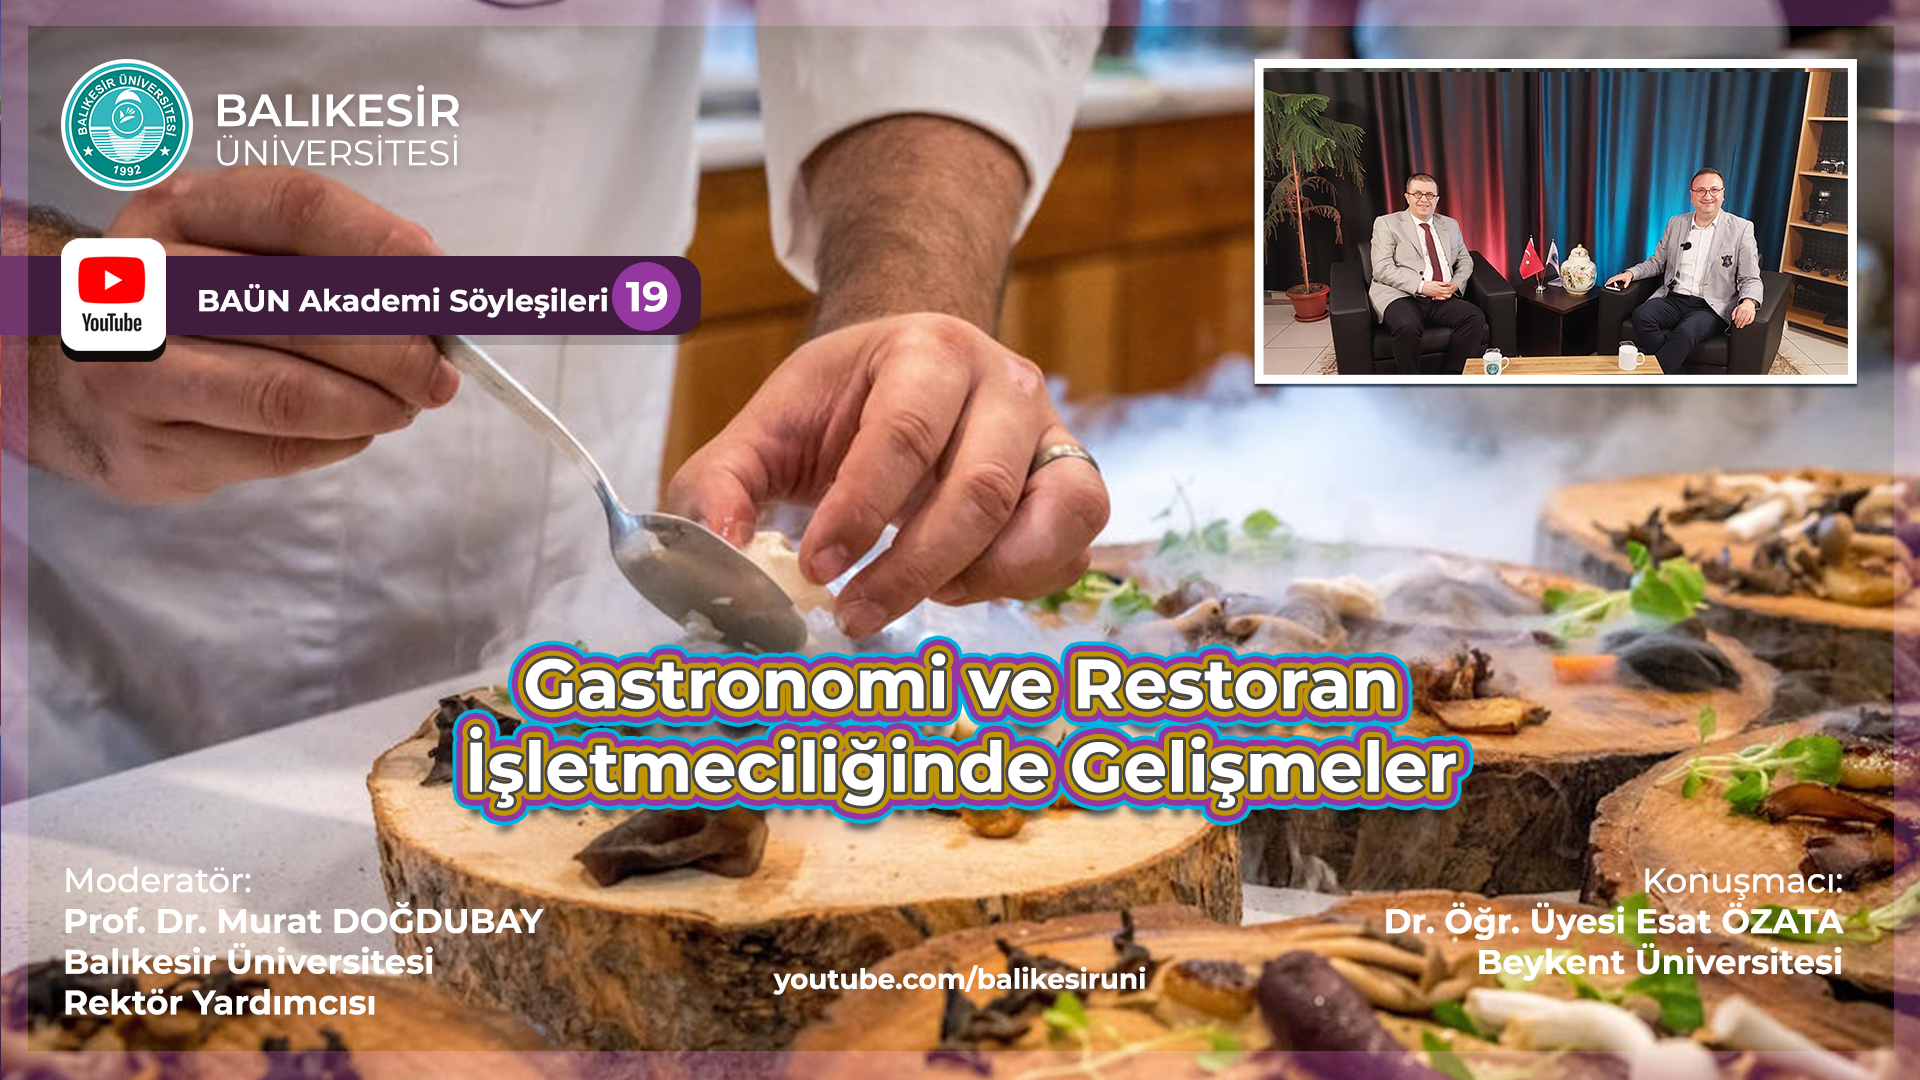 Balıkesir Üniversitesi'nde Gastronomi ve Restoran İşletmeciliği Üzerine Özel Program